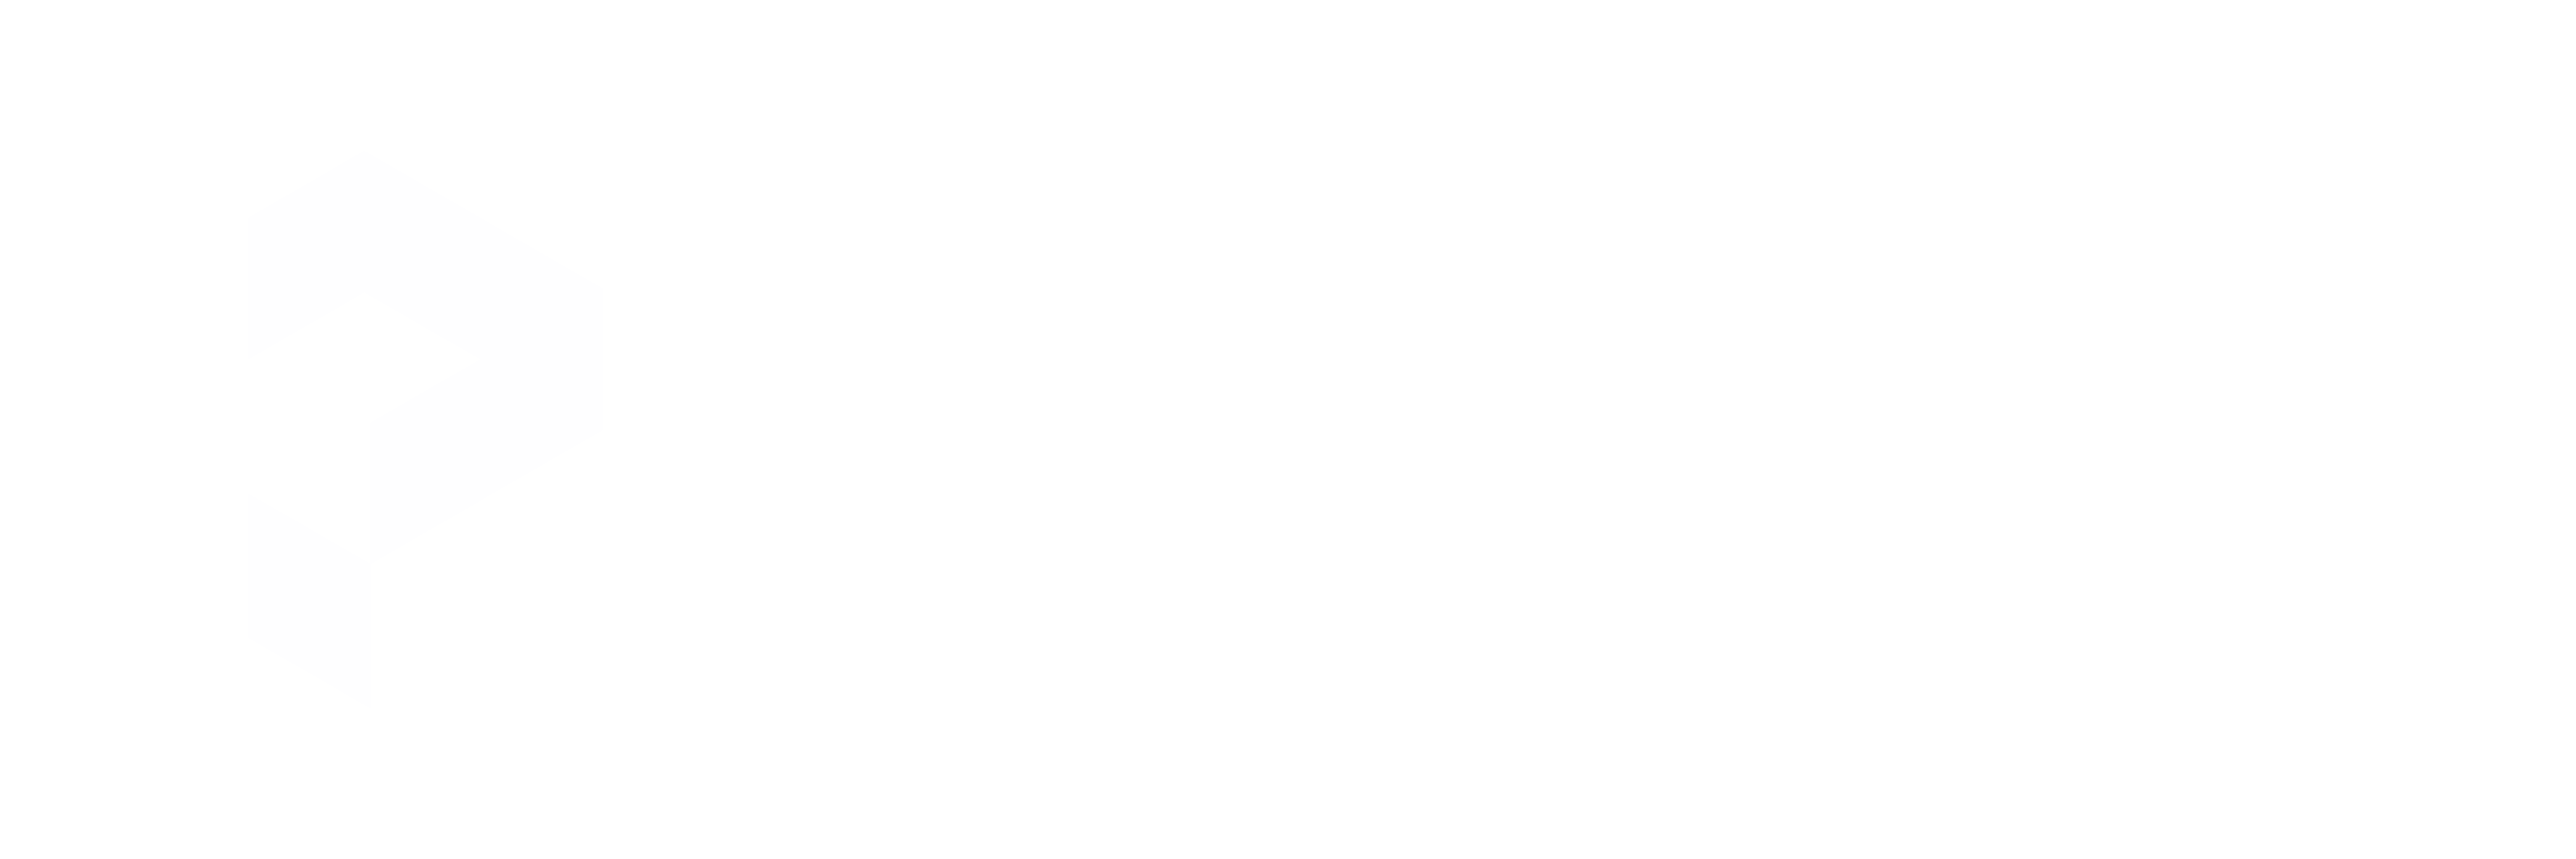 Polygon Geospatial logo